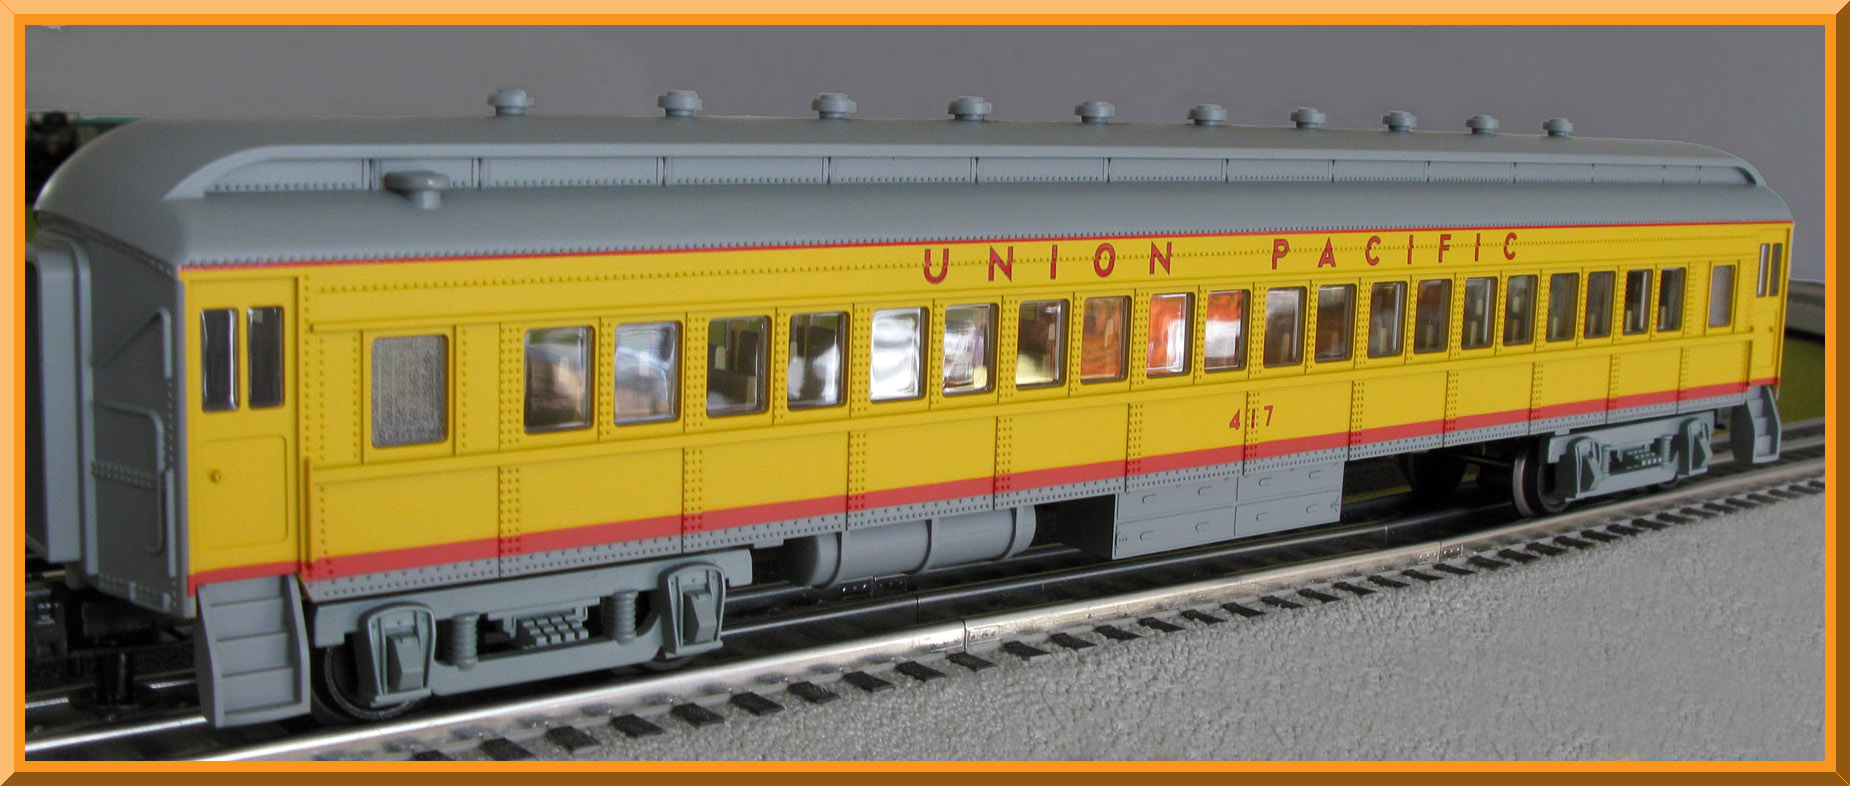 Lionel Union Pacific Passenger Train Set